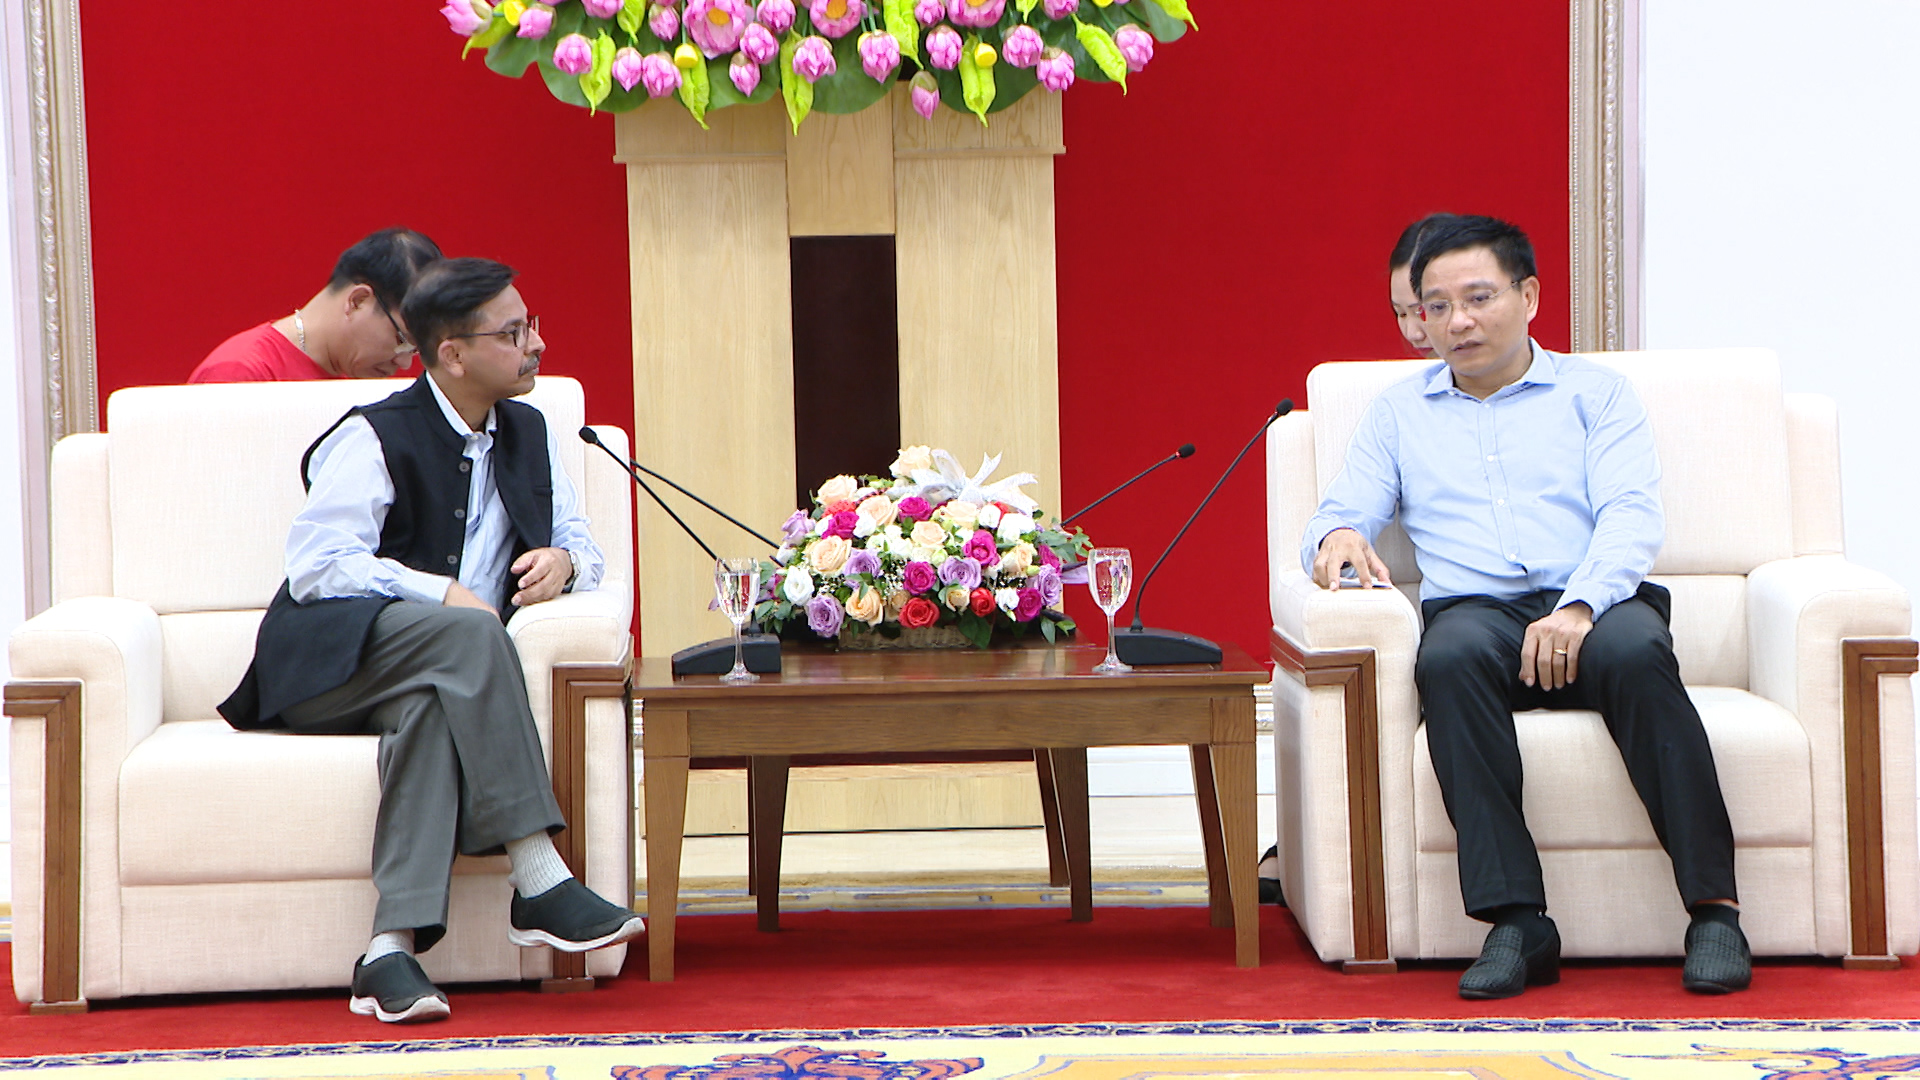 Chủ tịch UBND tỉnh Nguyễn Văn Thắng tiếp xã giao ngài Pranay Verma, Đại sứ đặc mệnh toàn quyền nước Cộng hòa Ấn Độ tại Việt Nam.